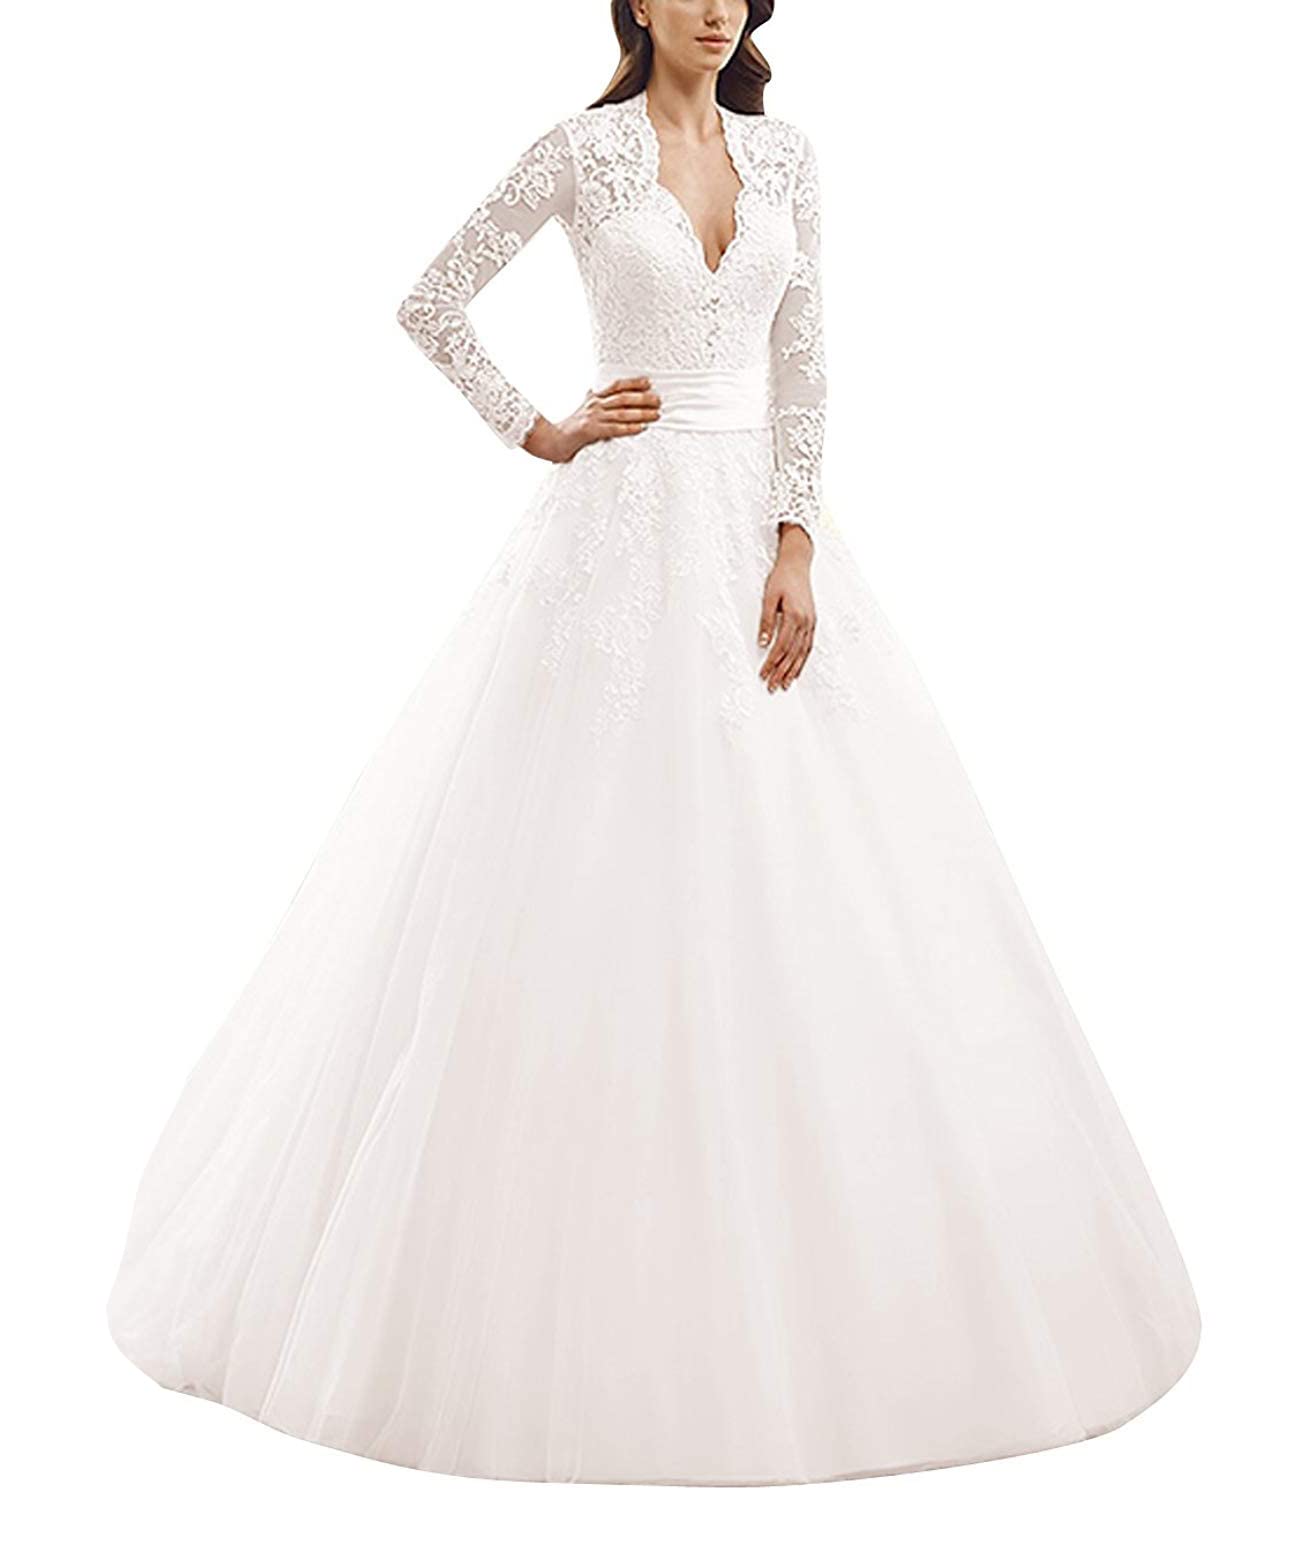 Brautkleid Lang Prinzessin Damen Hochzeitskleider Vintage Spitze Kleid mit Lange Ärmel A-Linie Weiß EUR38